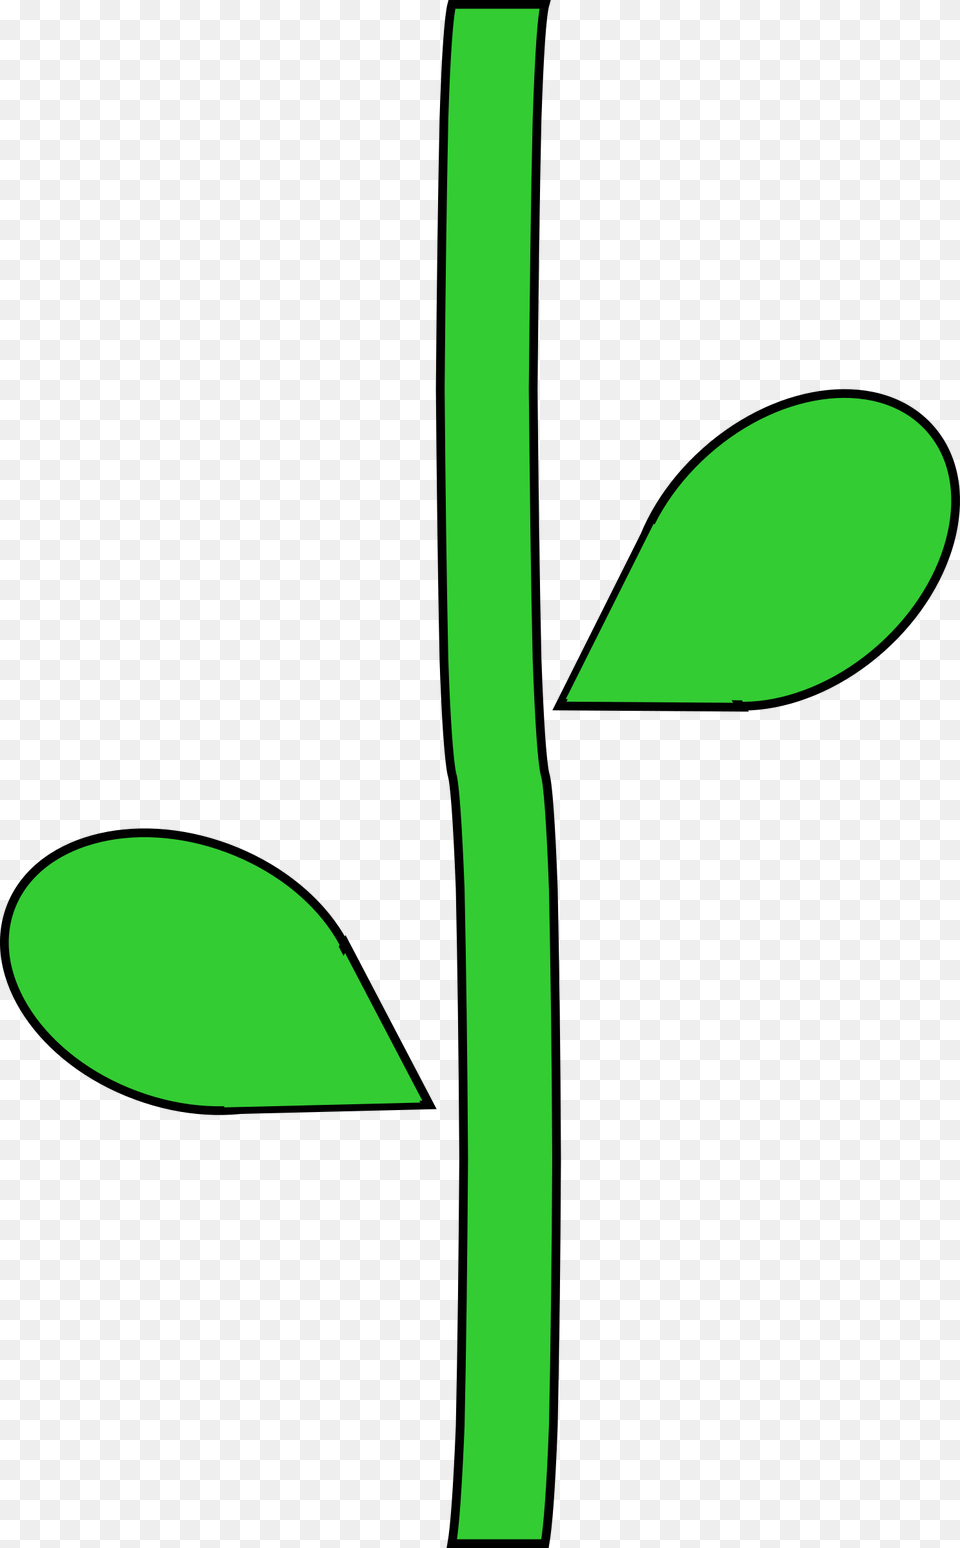 Flower Stem, Leaf, Plant, Herbal, Herbs Png Image